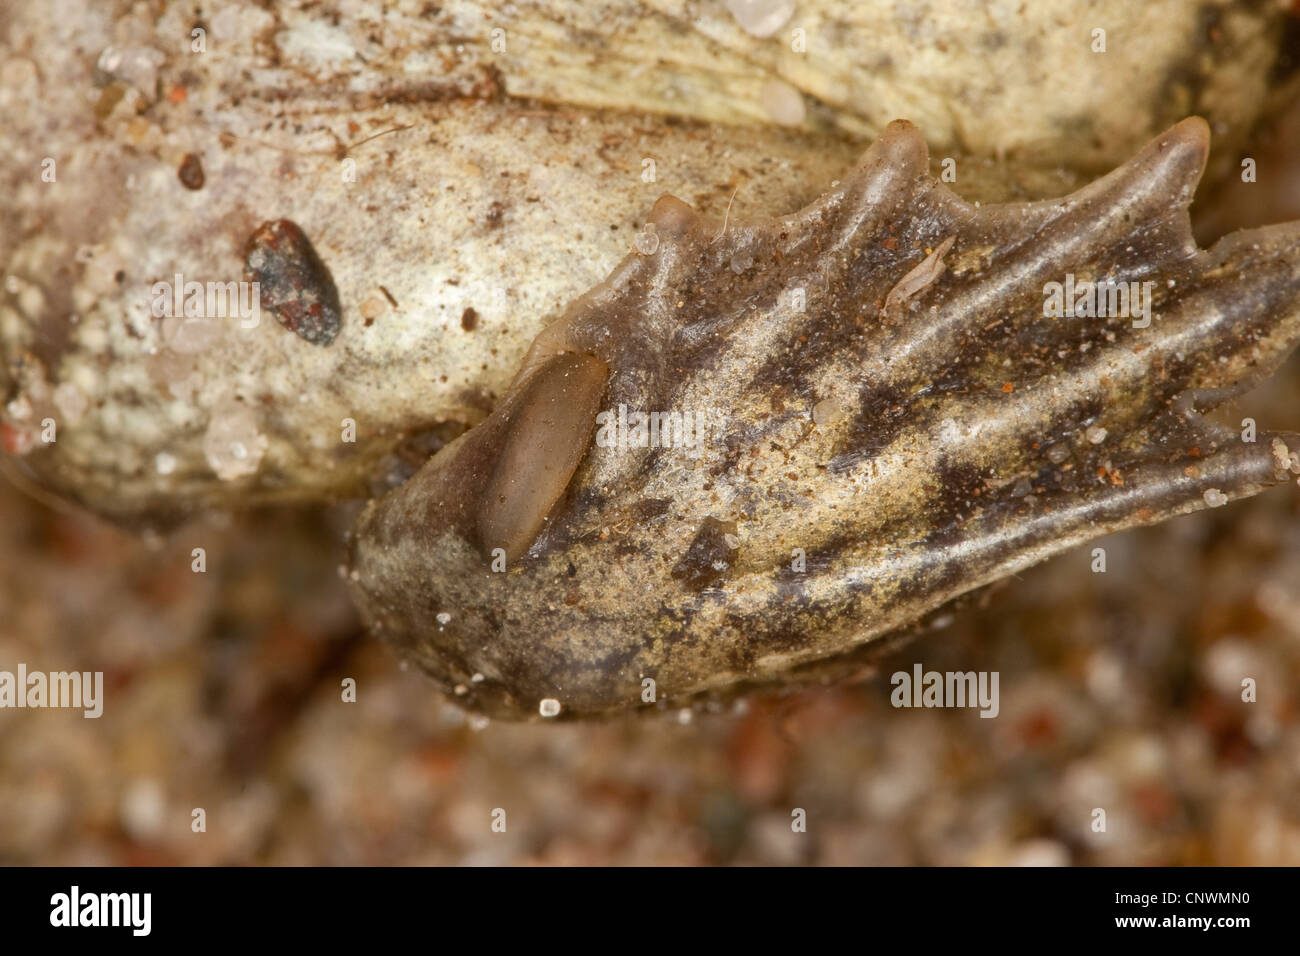 gemeinsamen katzenähnliche, Knoblauch Kröte (Pelobates Fuscus), Fuß einer Kröte, Deutschland Stockfoto